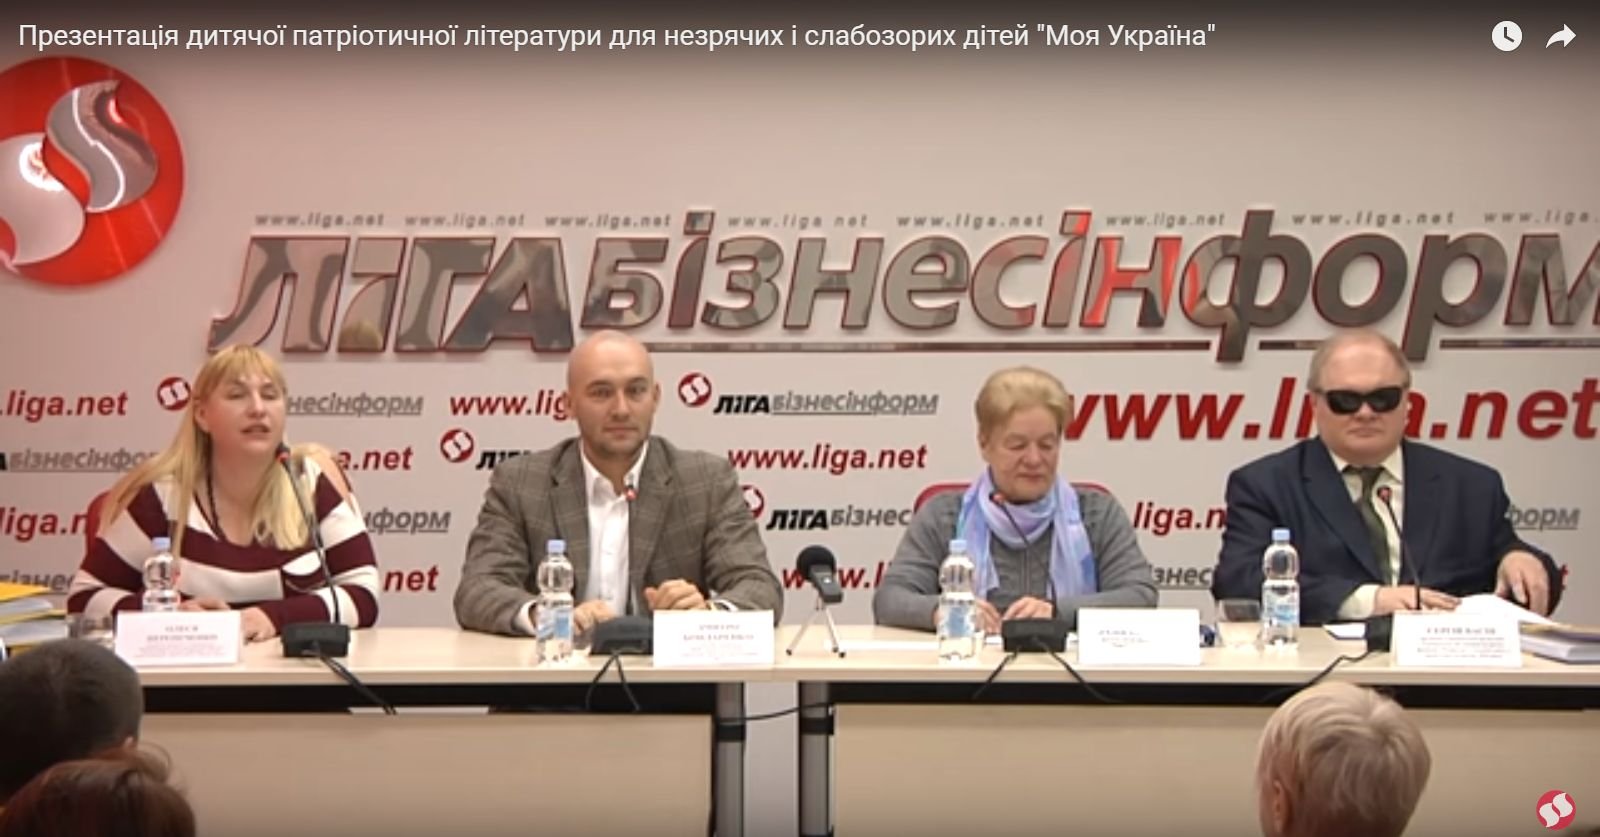 Презентация с онлайн-трансляцией серии детской патриотический литературы для незрячих и слабовидящих детей "Моя Украина"